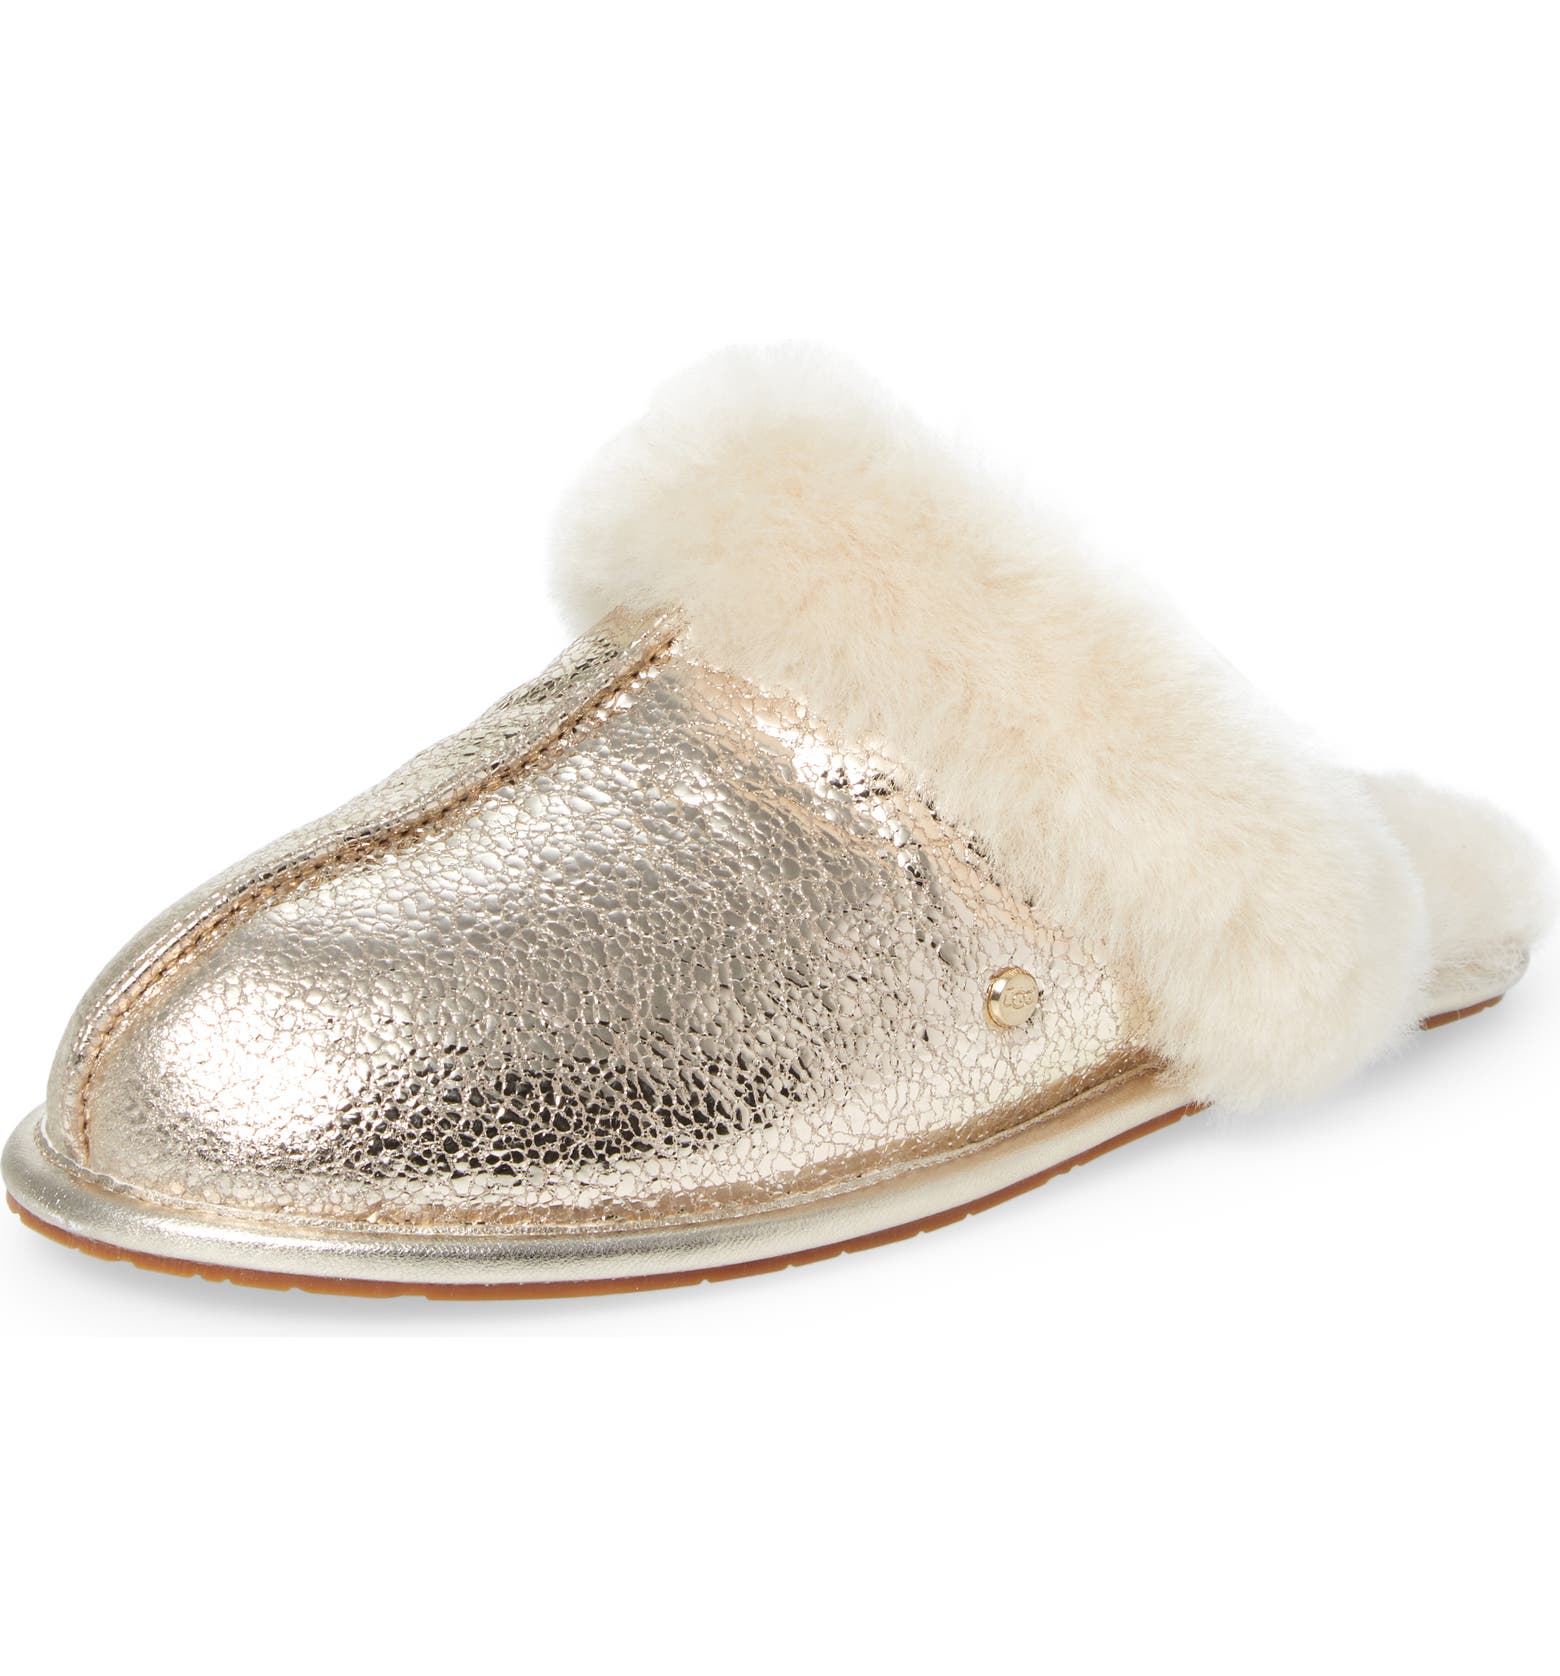 gifts for women : Ugg slipper